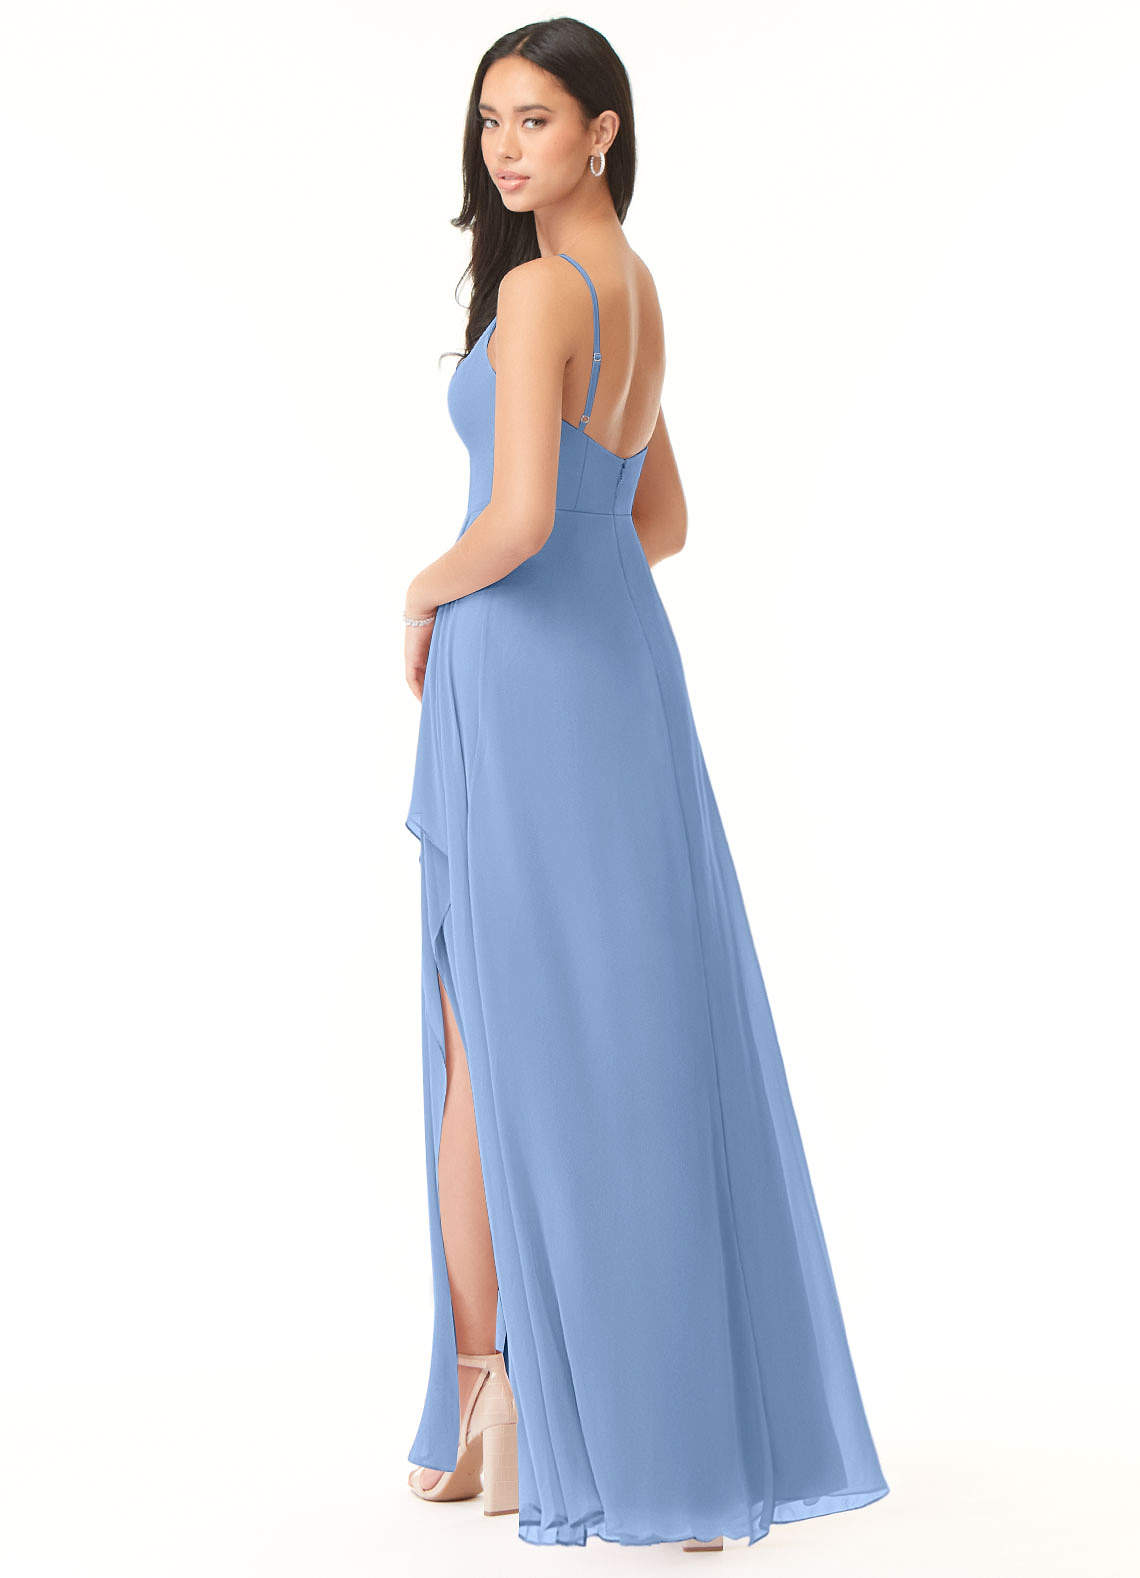 Azazie Collette Bridesmaid Dresses A-Line Chiffon Floor-Length Dress image1